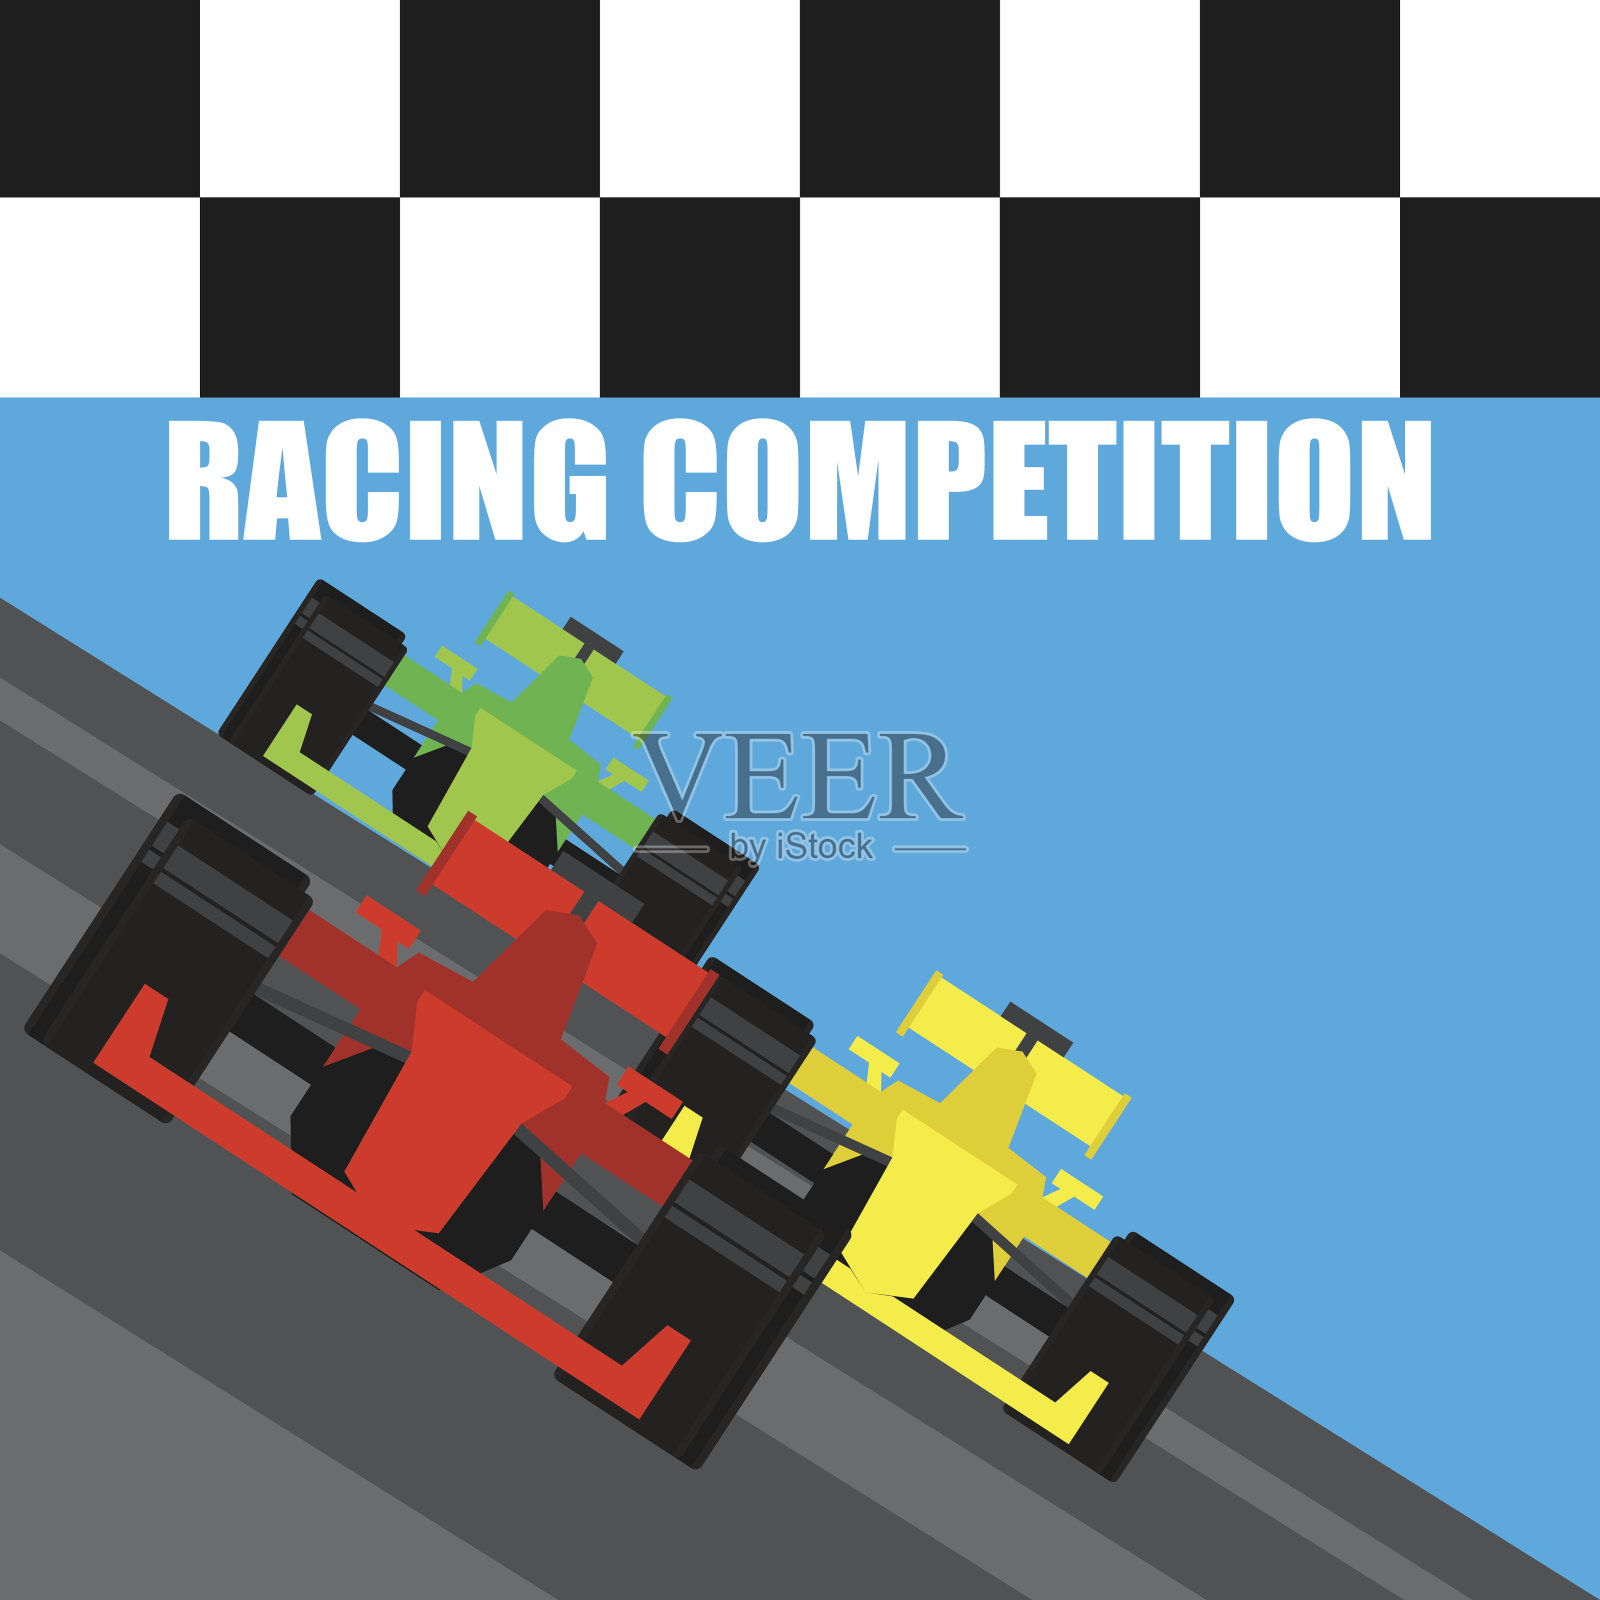 一级方程式/大奖赛赛车海报。矢量图插画图片素材